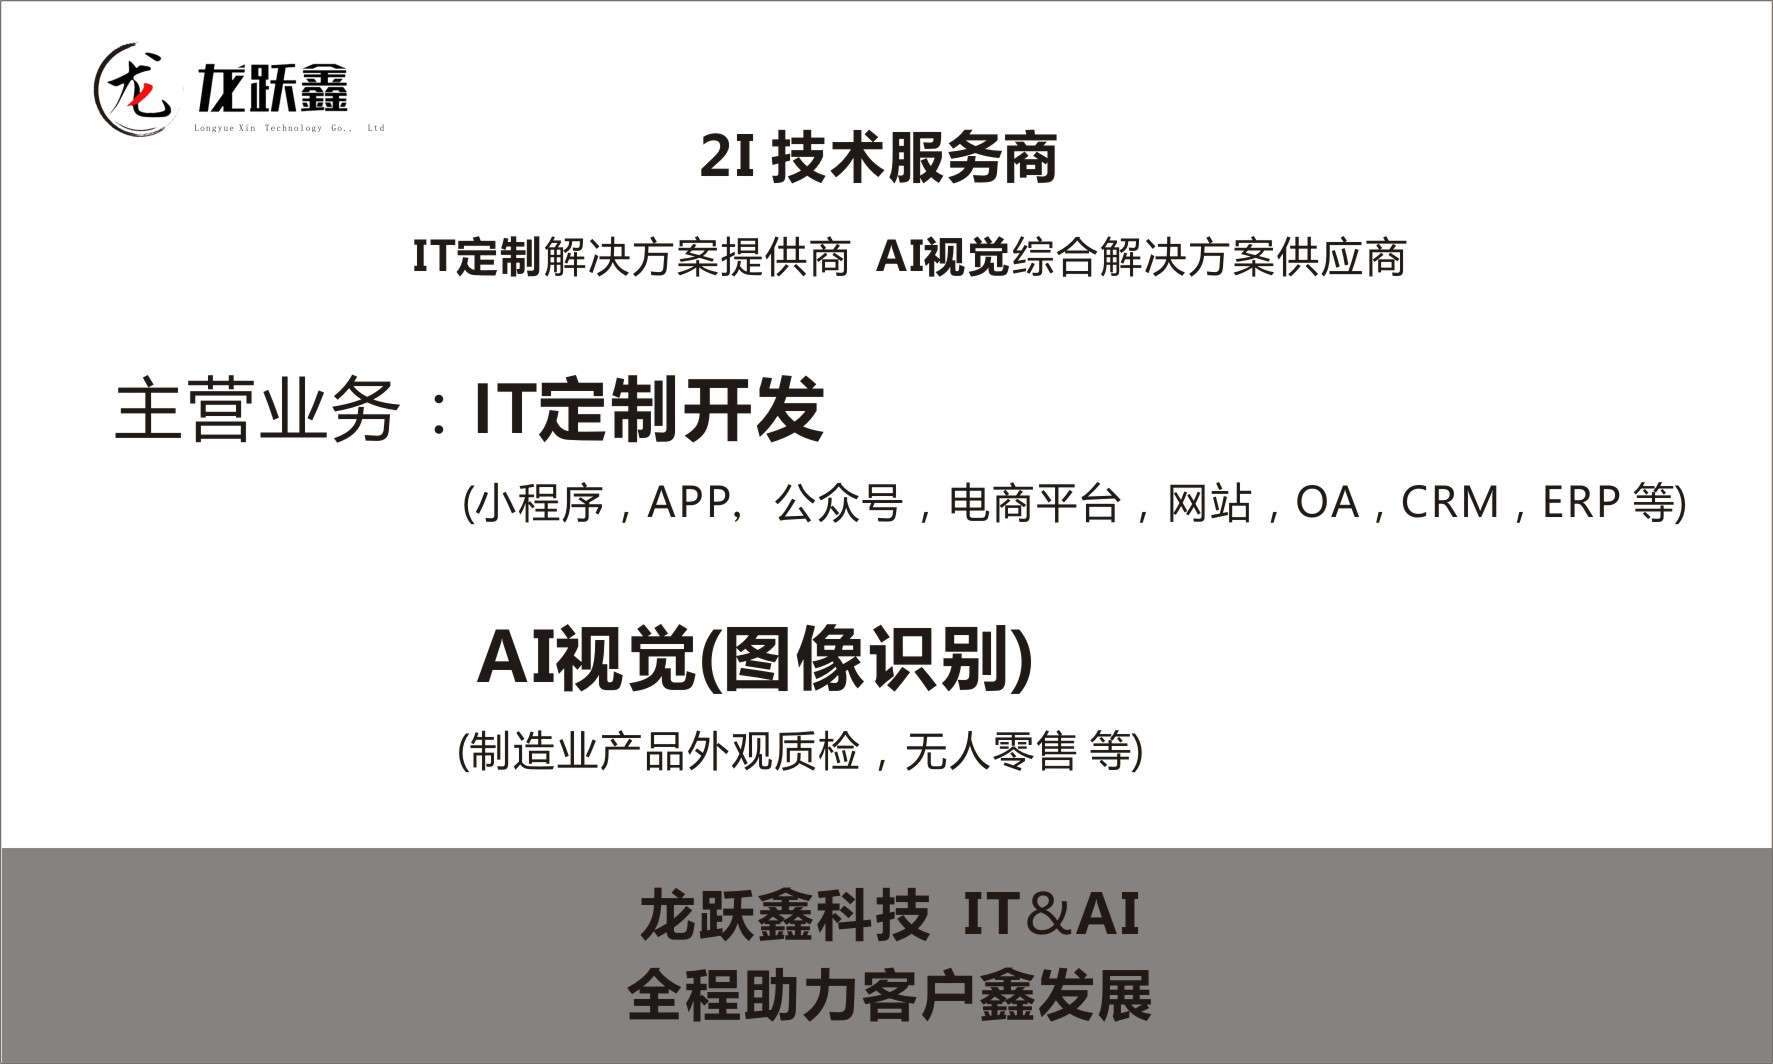 龙跃鑫科技提供专业2I技术服务